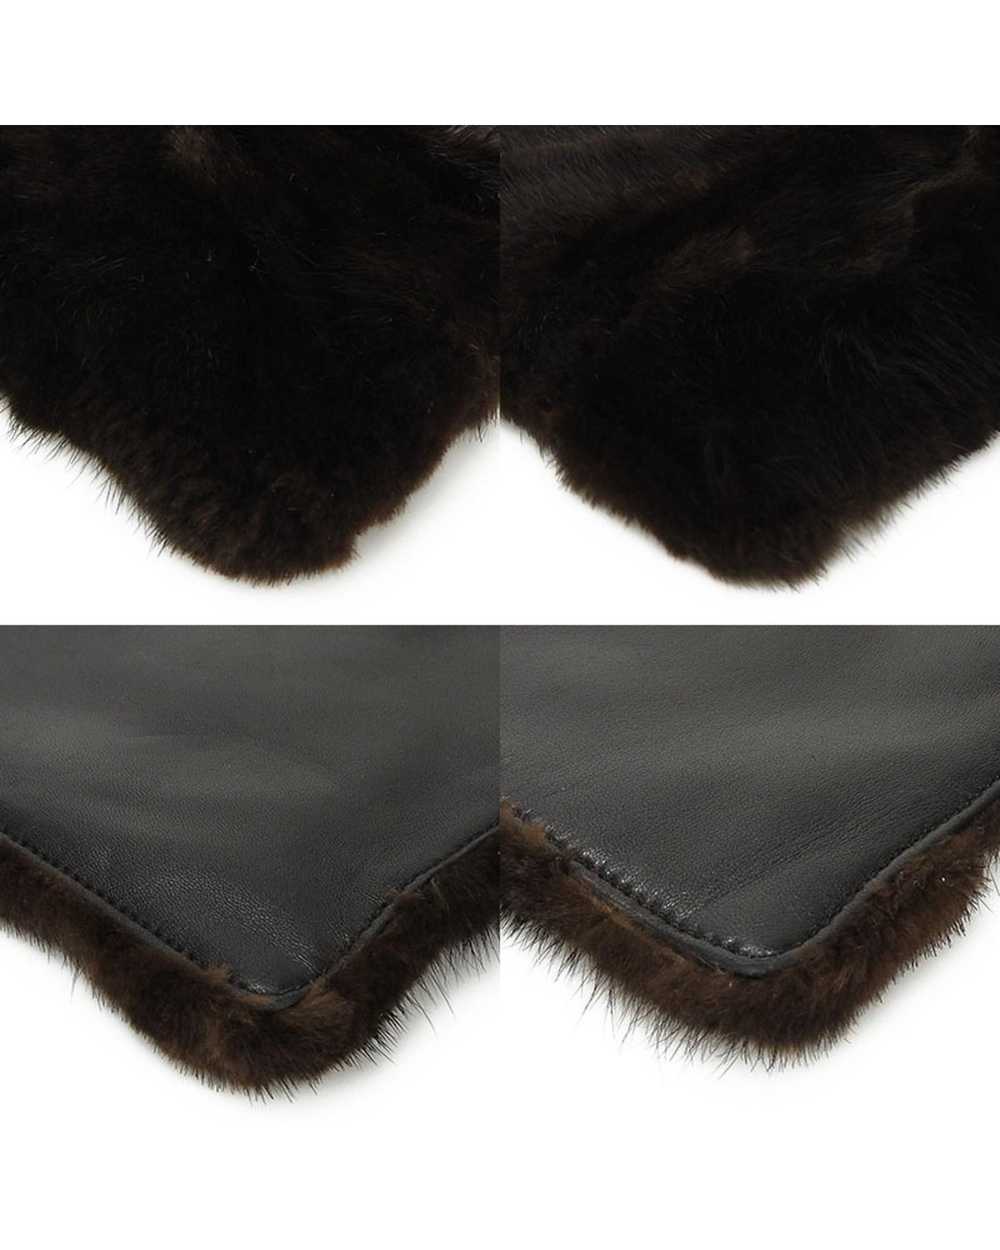 Loewe Mink Fur Nappa Leather Handbag - image 4